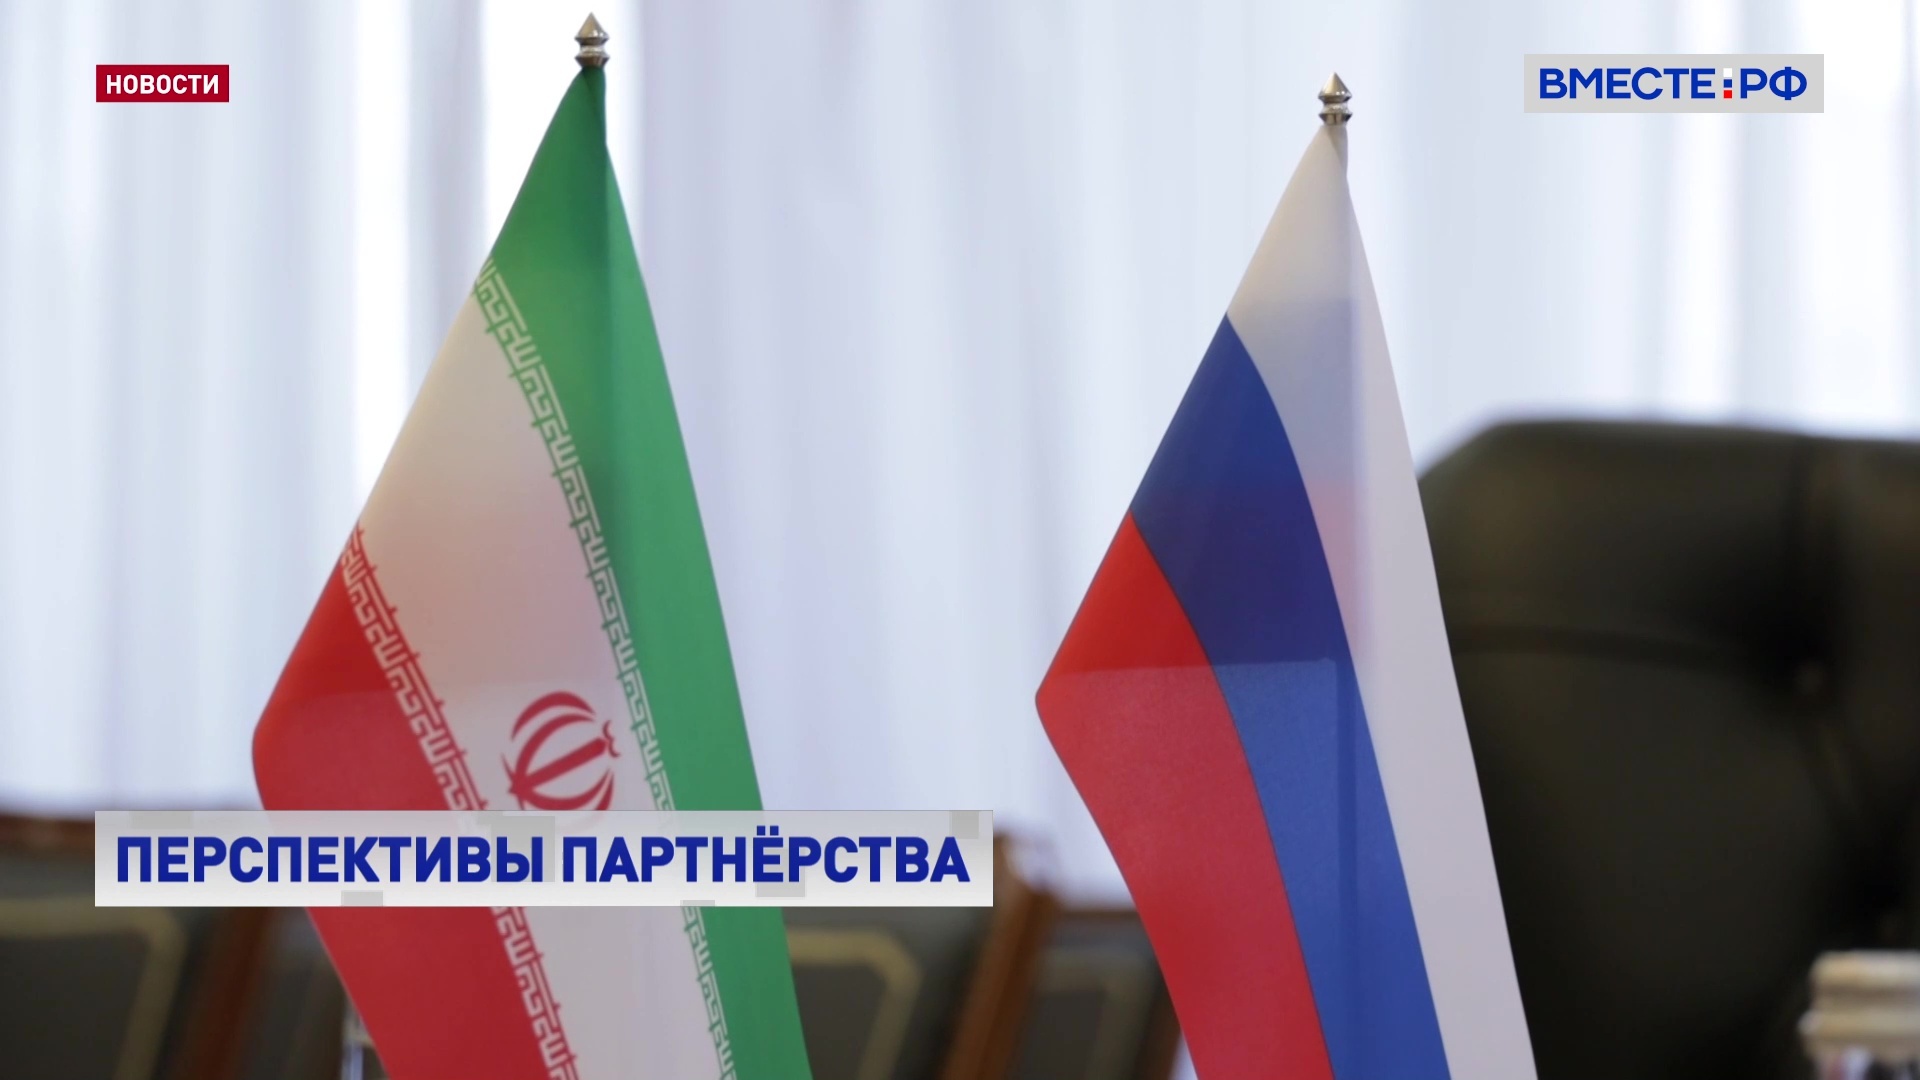 Россия и Иран должны обмениваться опытом по противодействию западным санкциям, считает Косачев